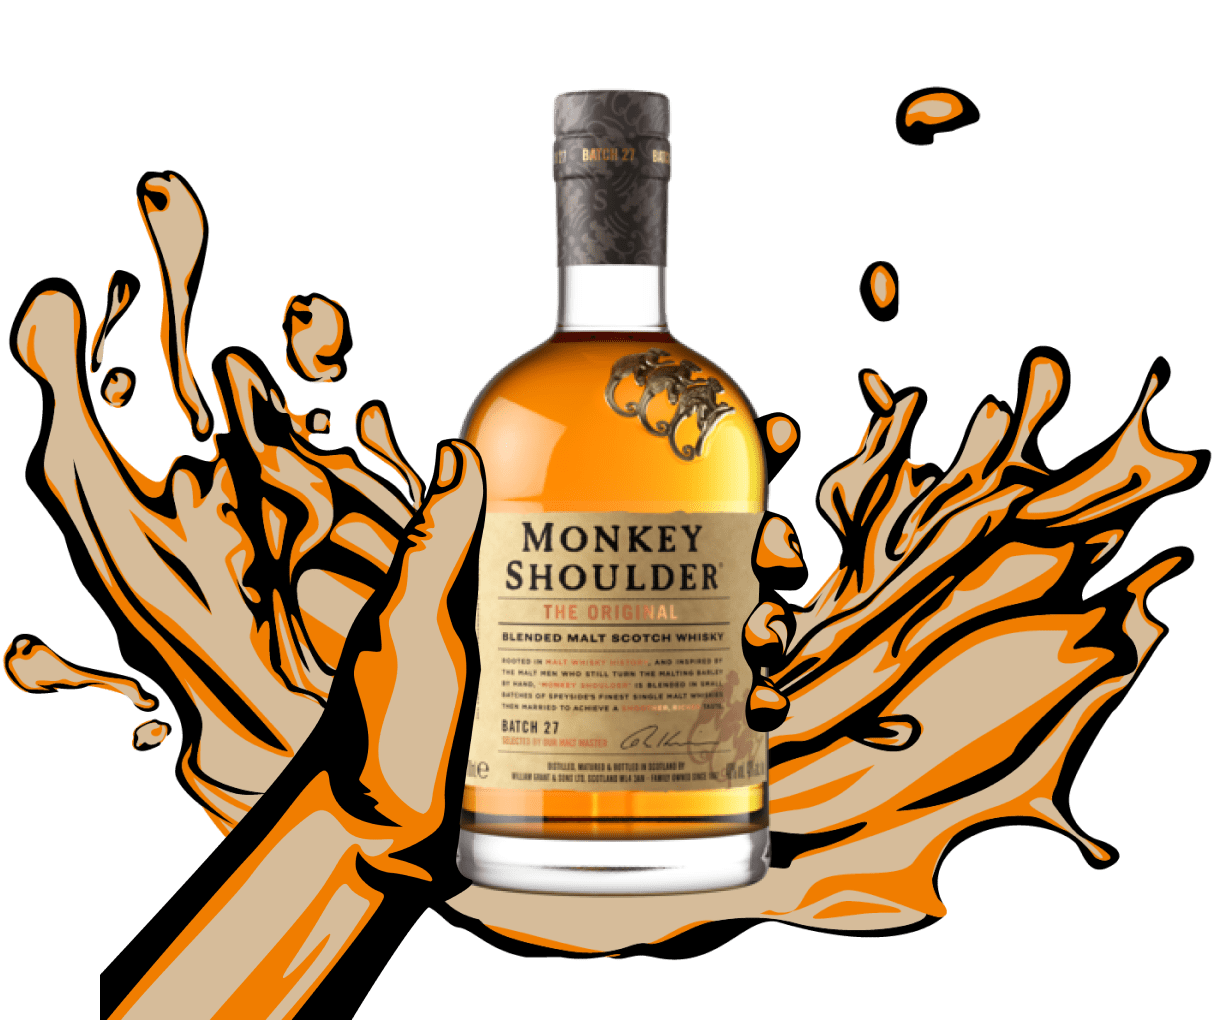 Malt Original Monkey Shoulder | Speyside Shoulder Whisky Blended Monkey Scotch